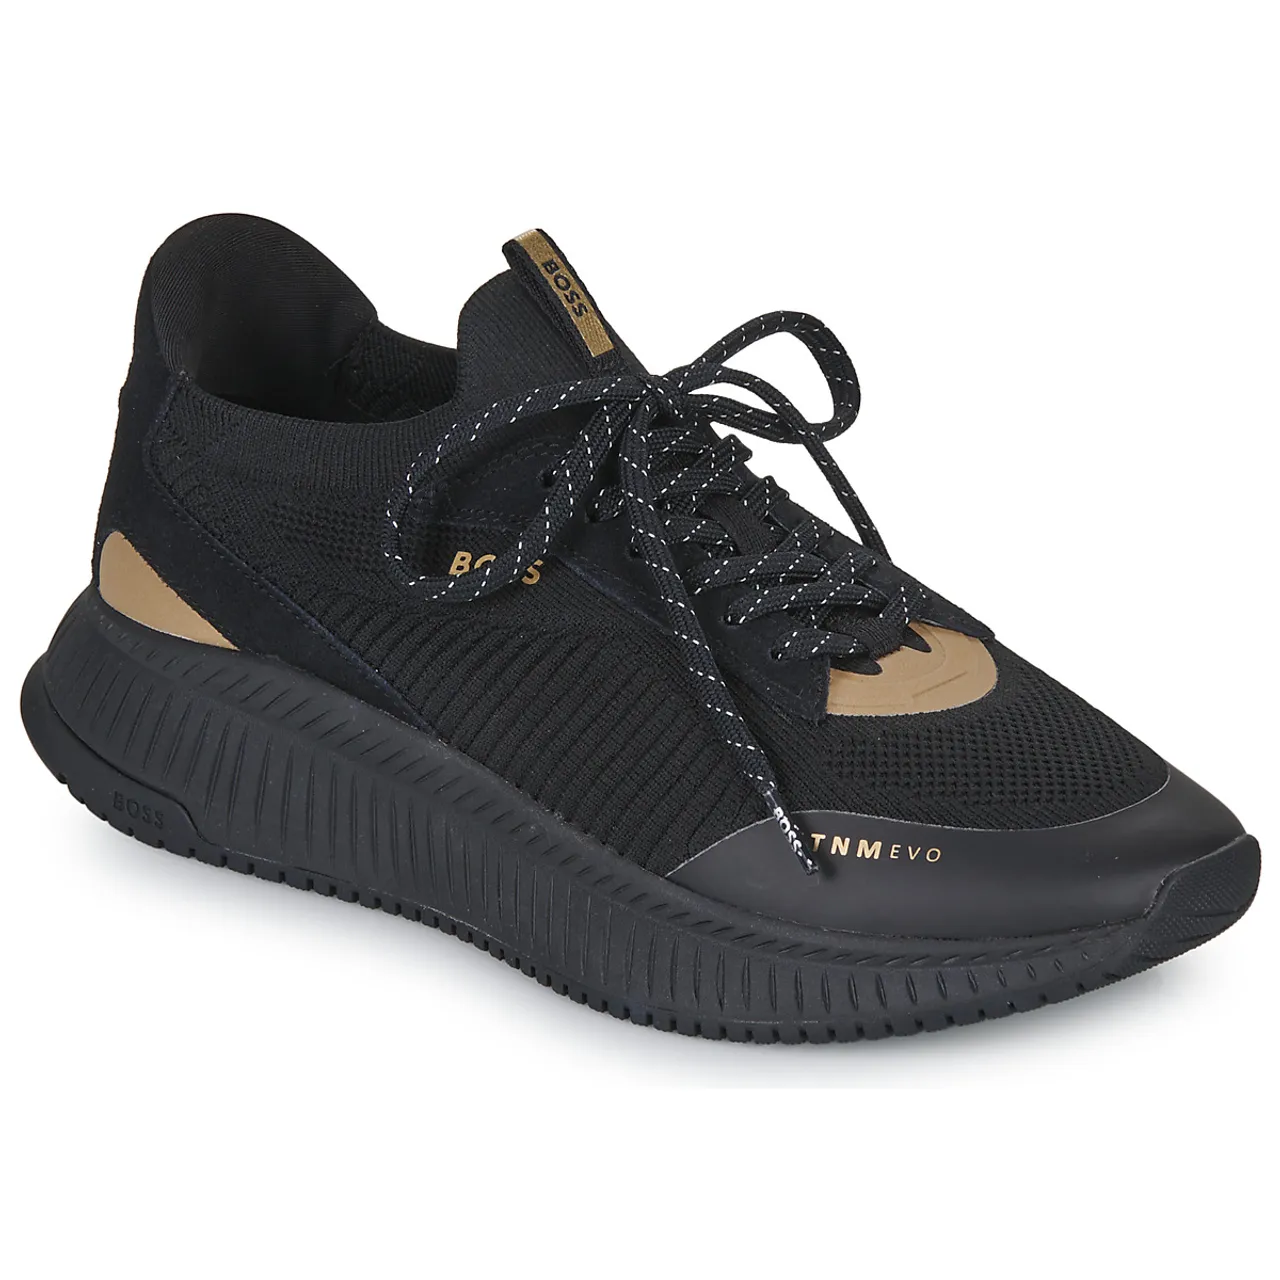 BOSS  TTNM EVO_Slon_knsd  men's Shoes (Trainers) in Black